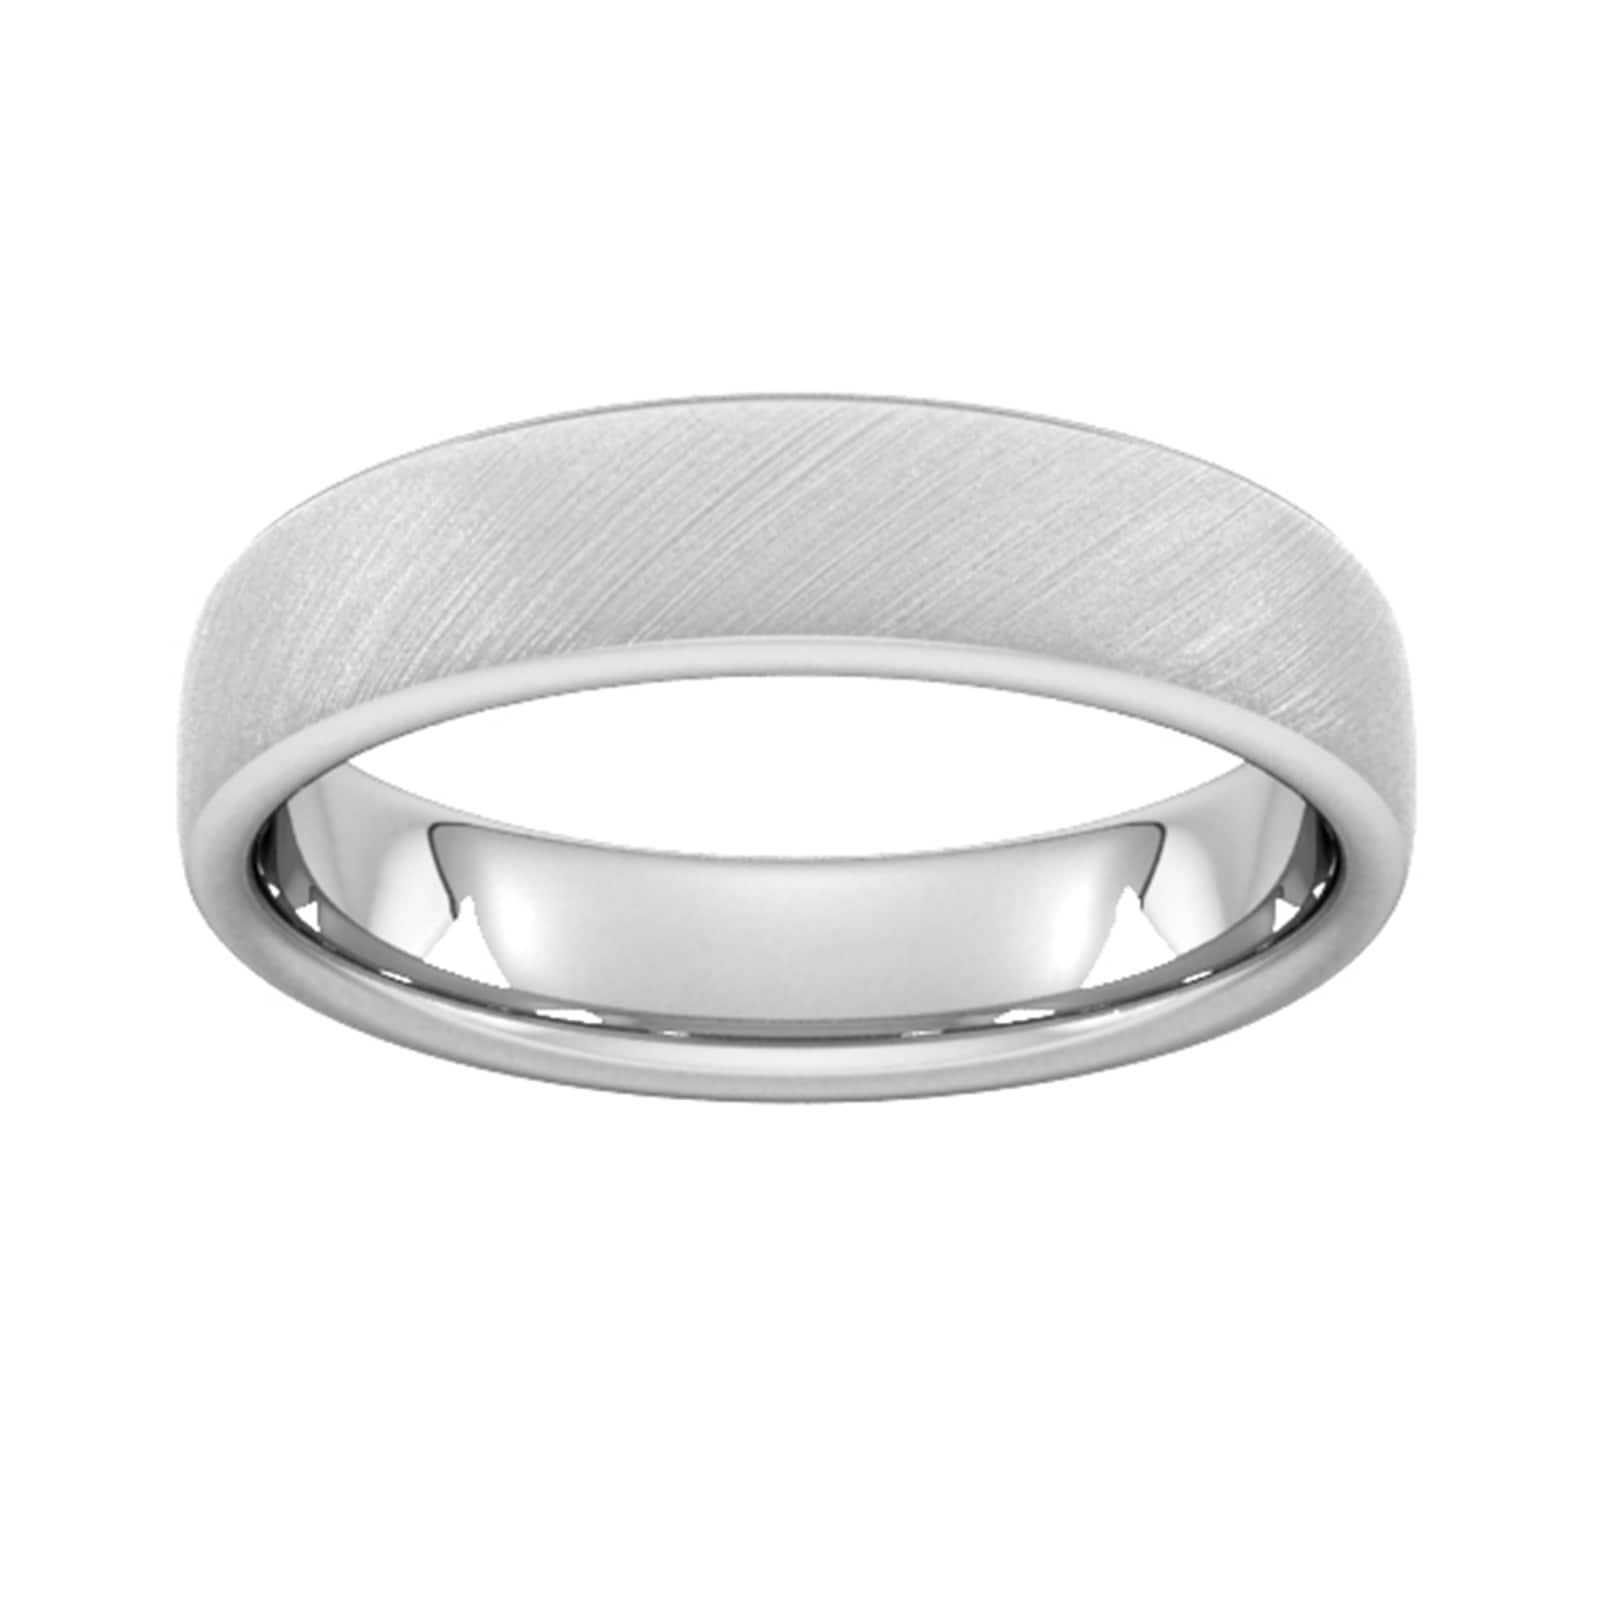 5mm Slight Court Standard Diagonal Matt Finish Wedding Ring In 950 Palladium - Ring Size M